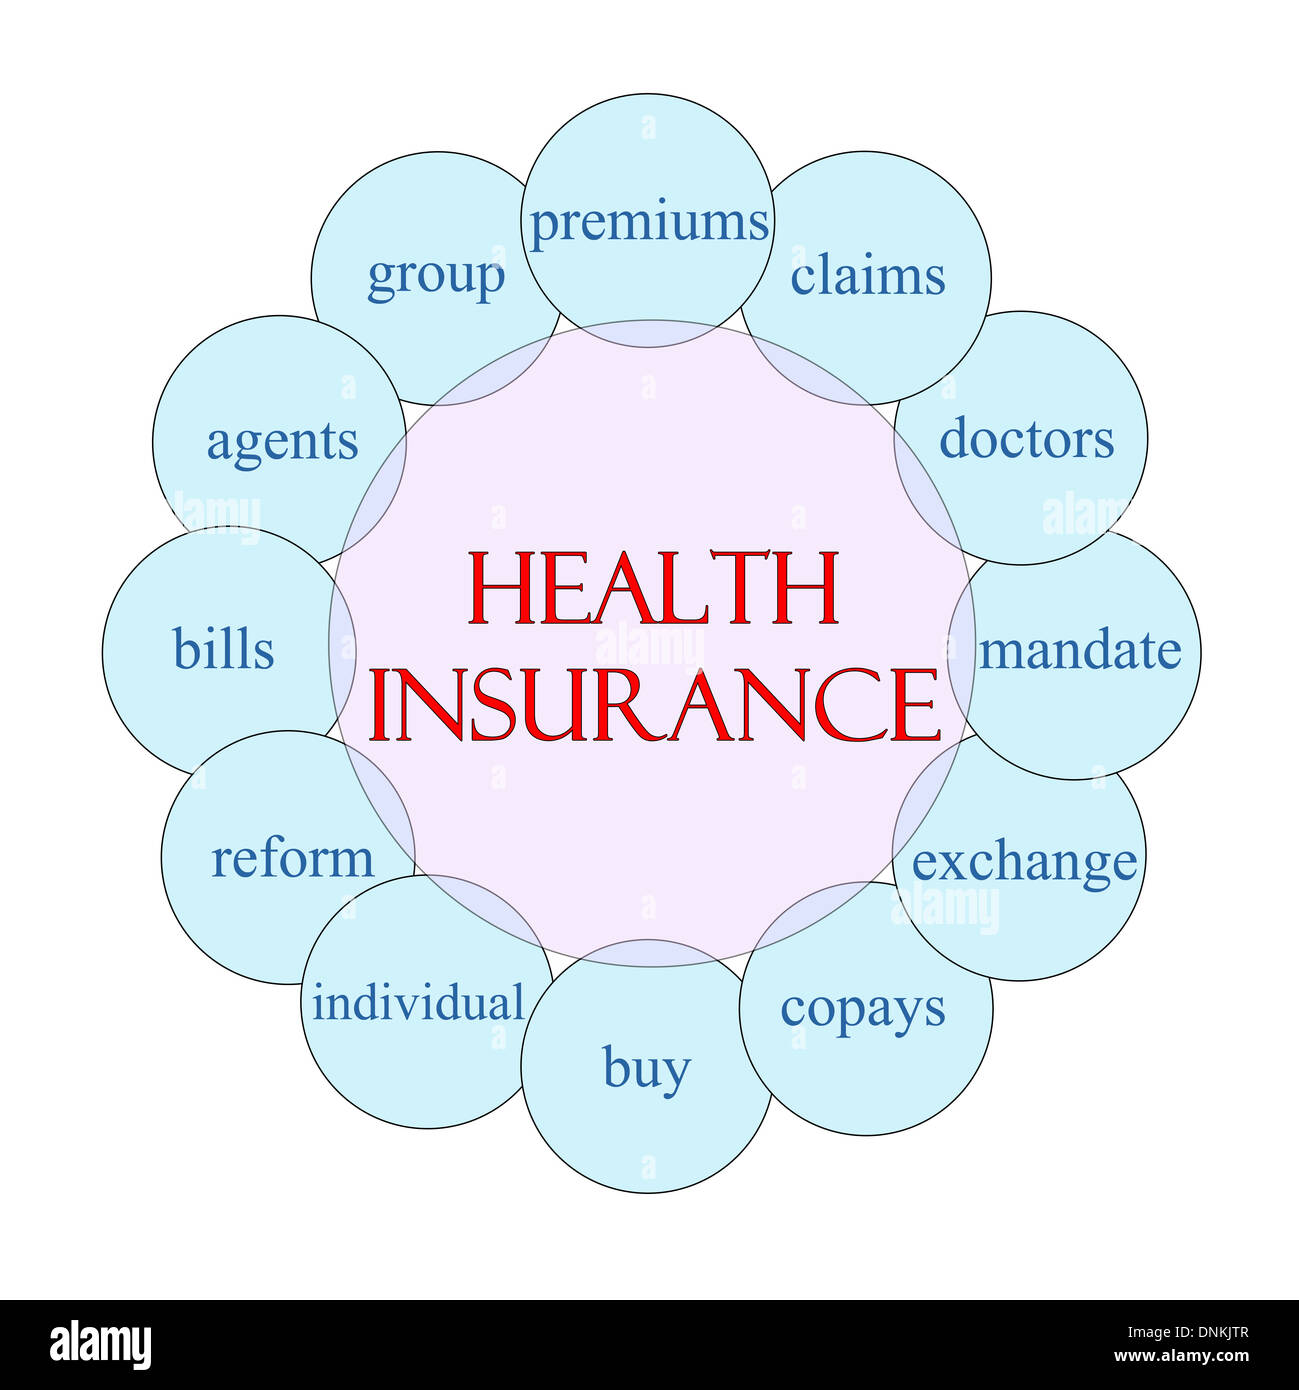 Krankenversicherung-Konzept kreisförmige Darstellung in Pink und blau mit großen Begriffe wie Premium, Ansprüche, Mandat und vieles mehr. Stockfoto